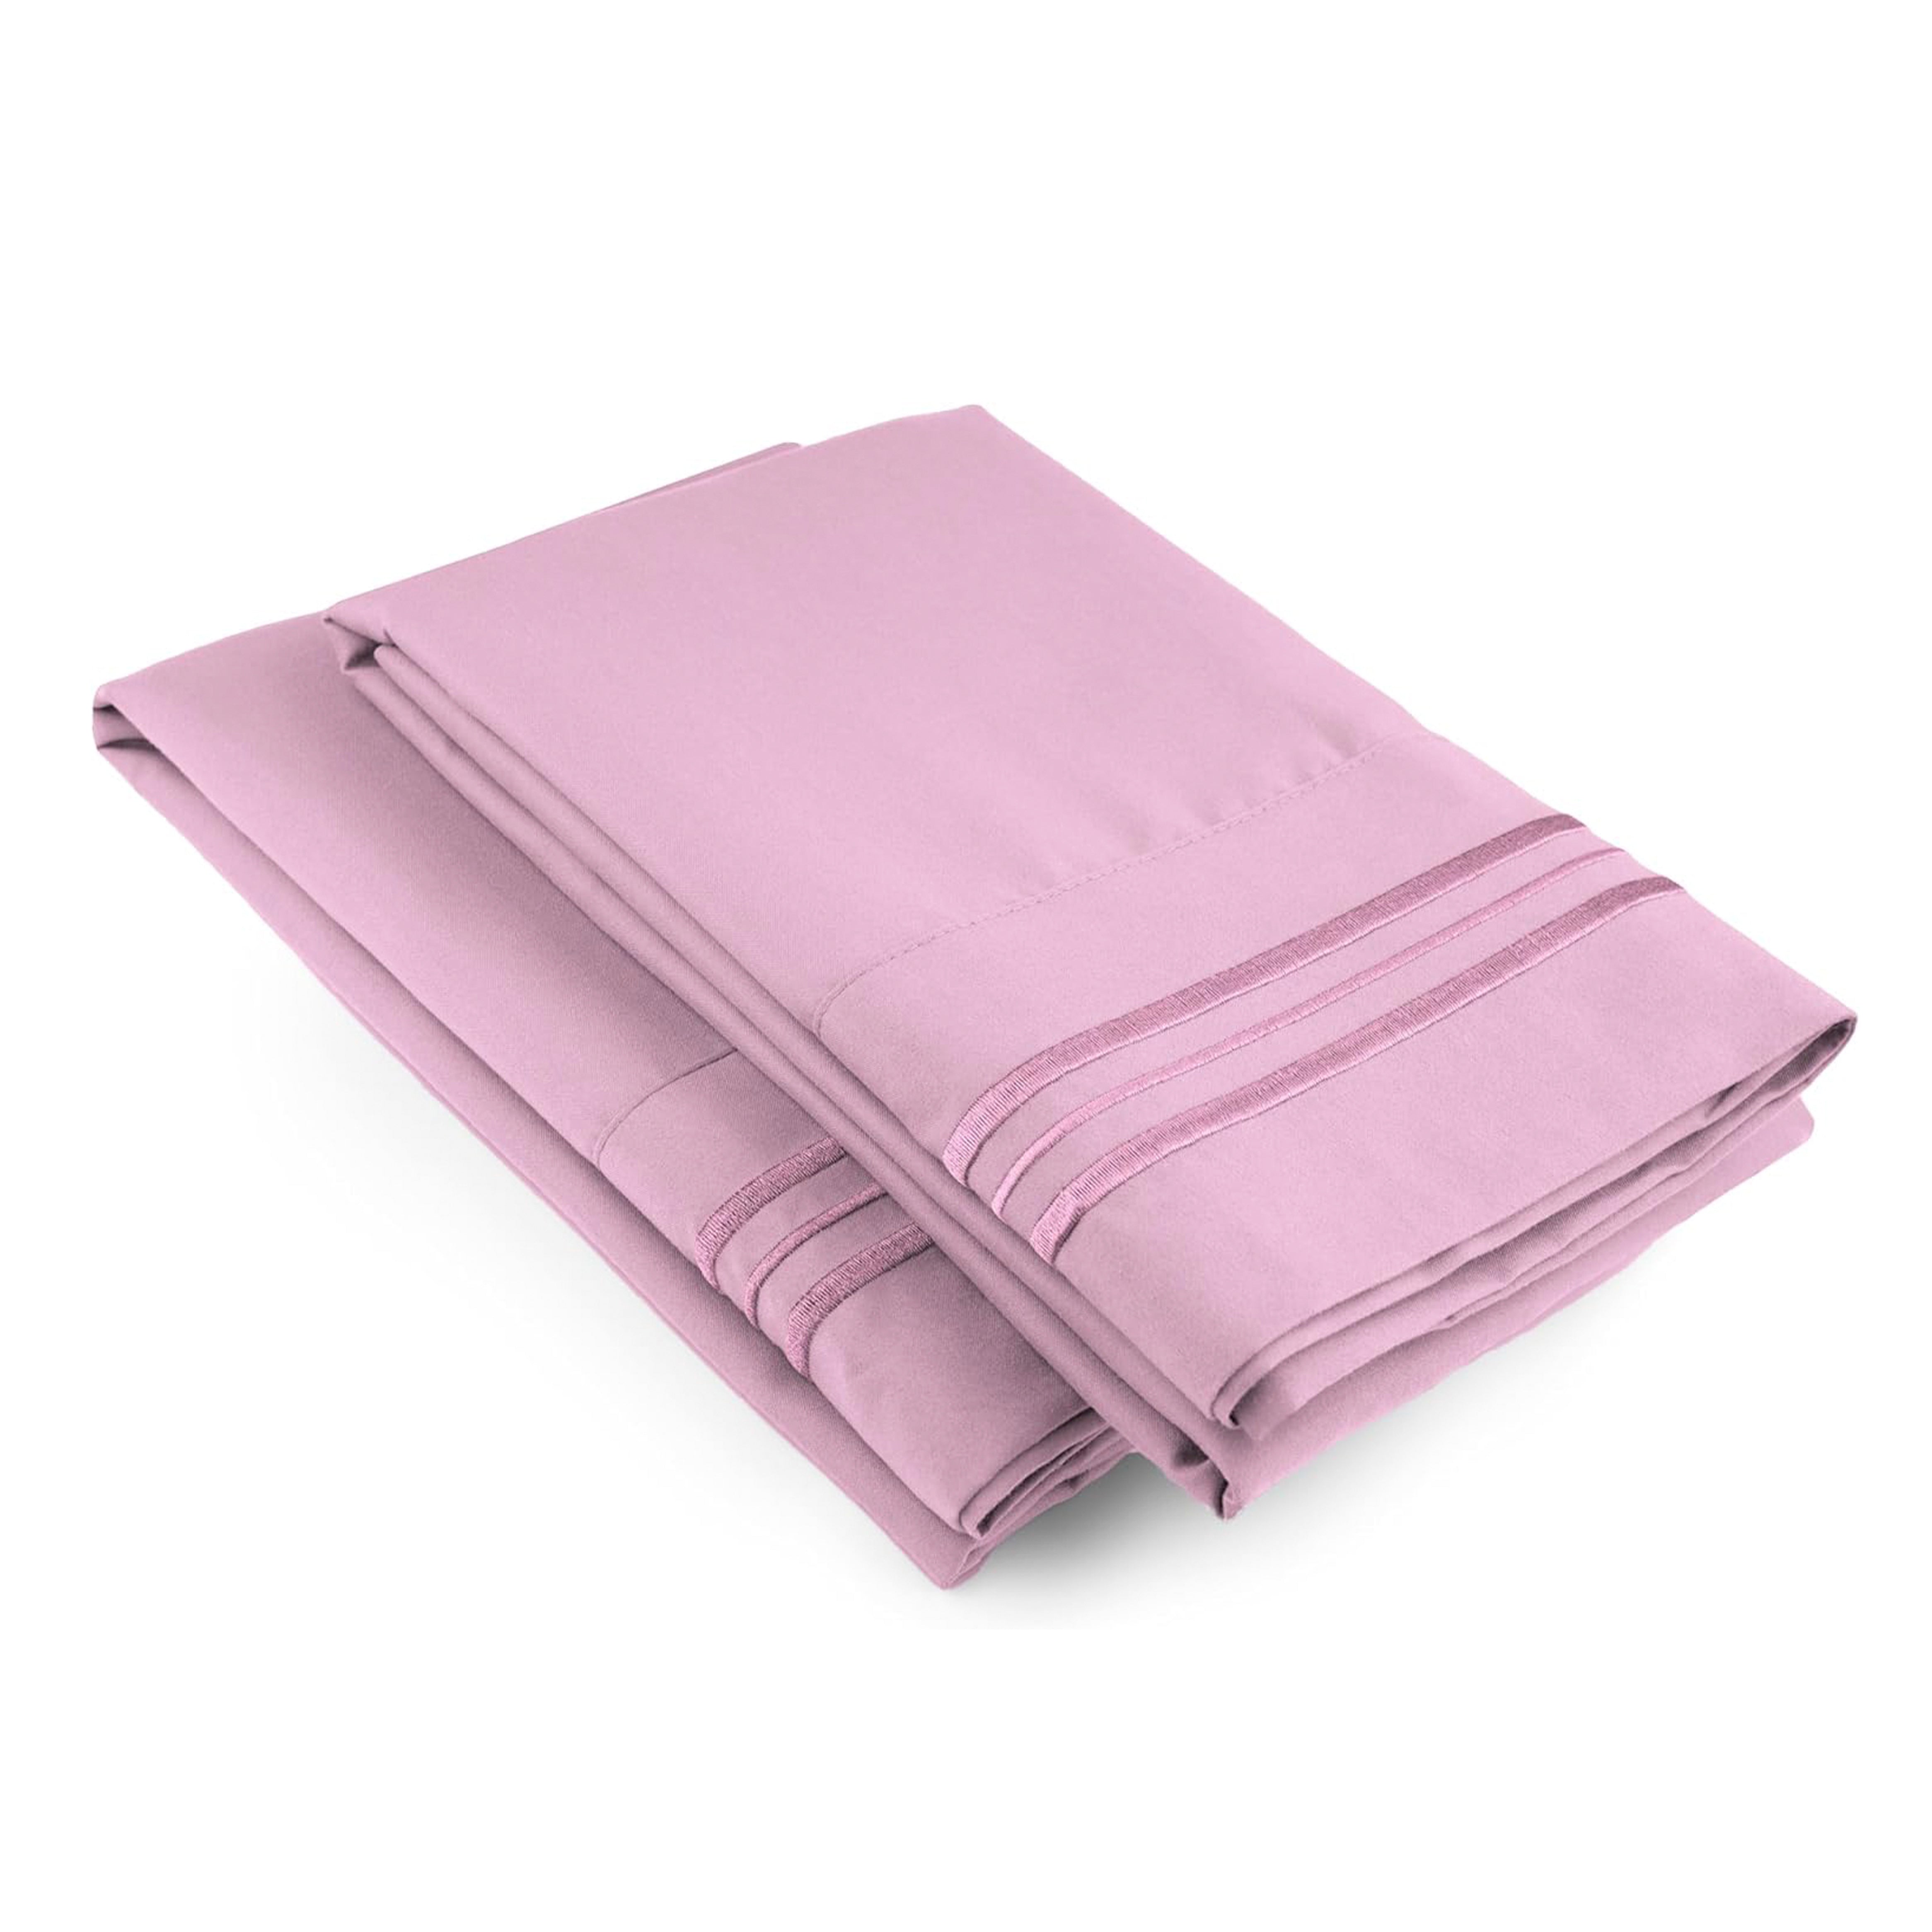 2 Pillowcase Set - Light Pink